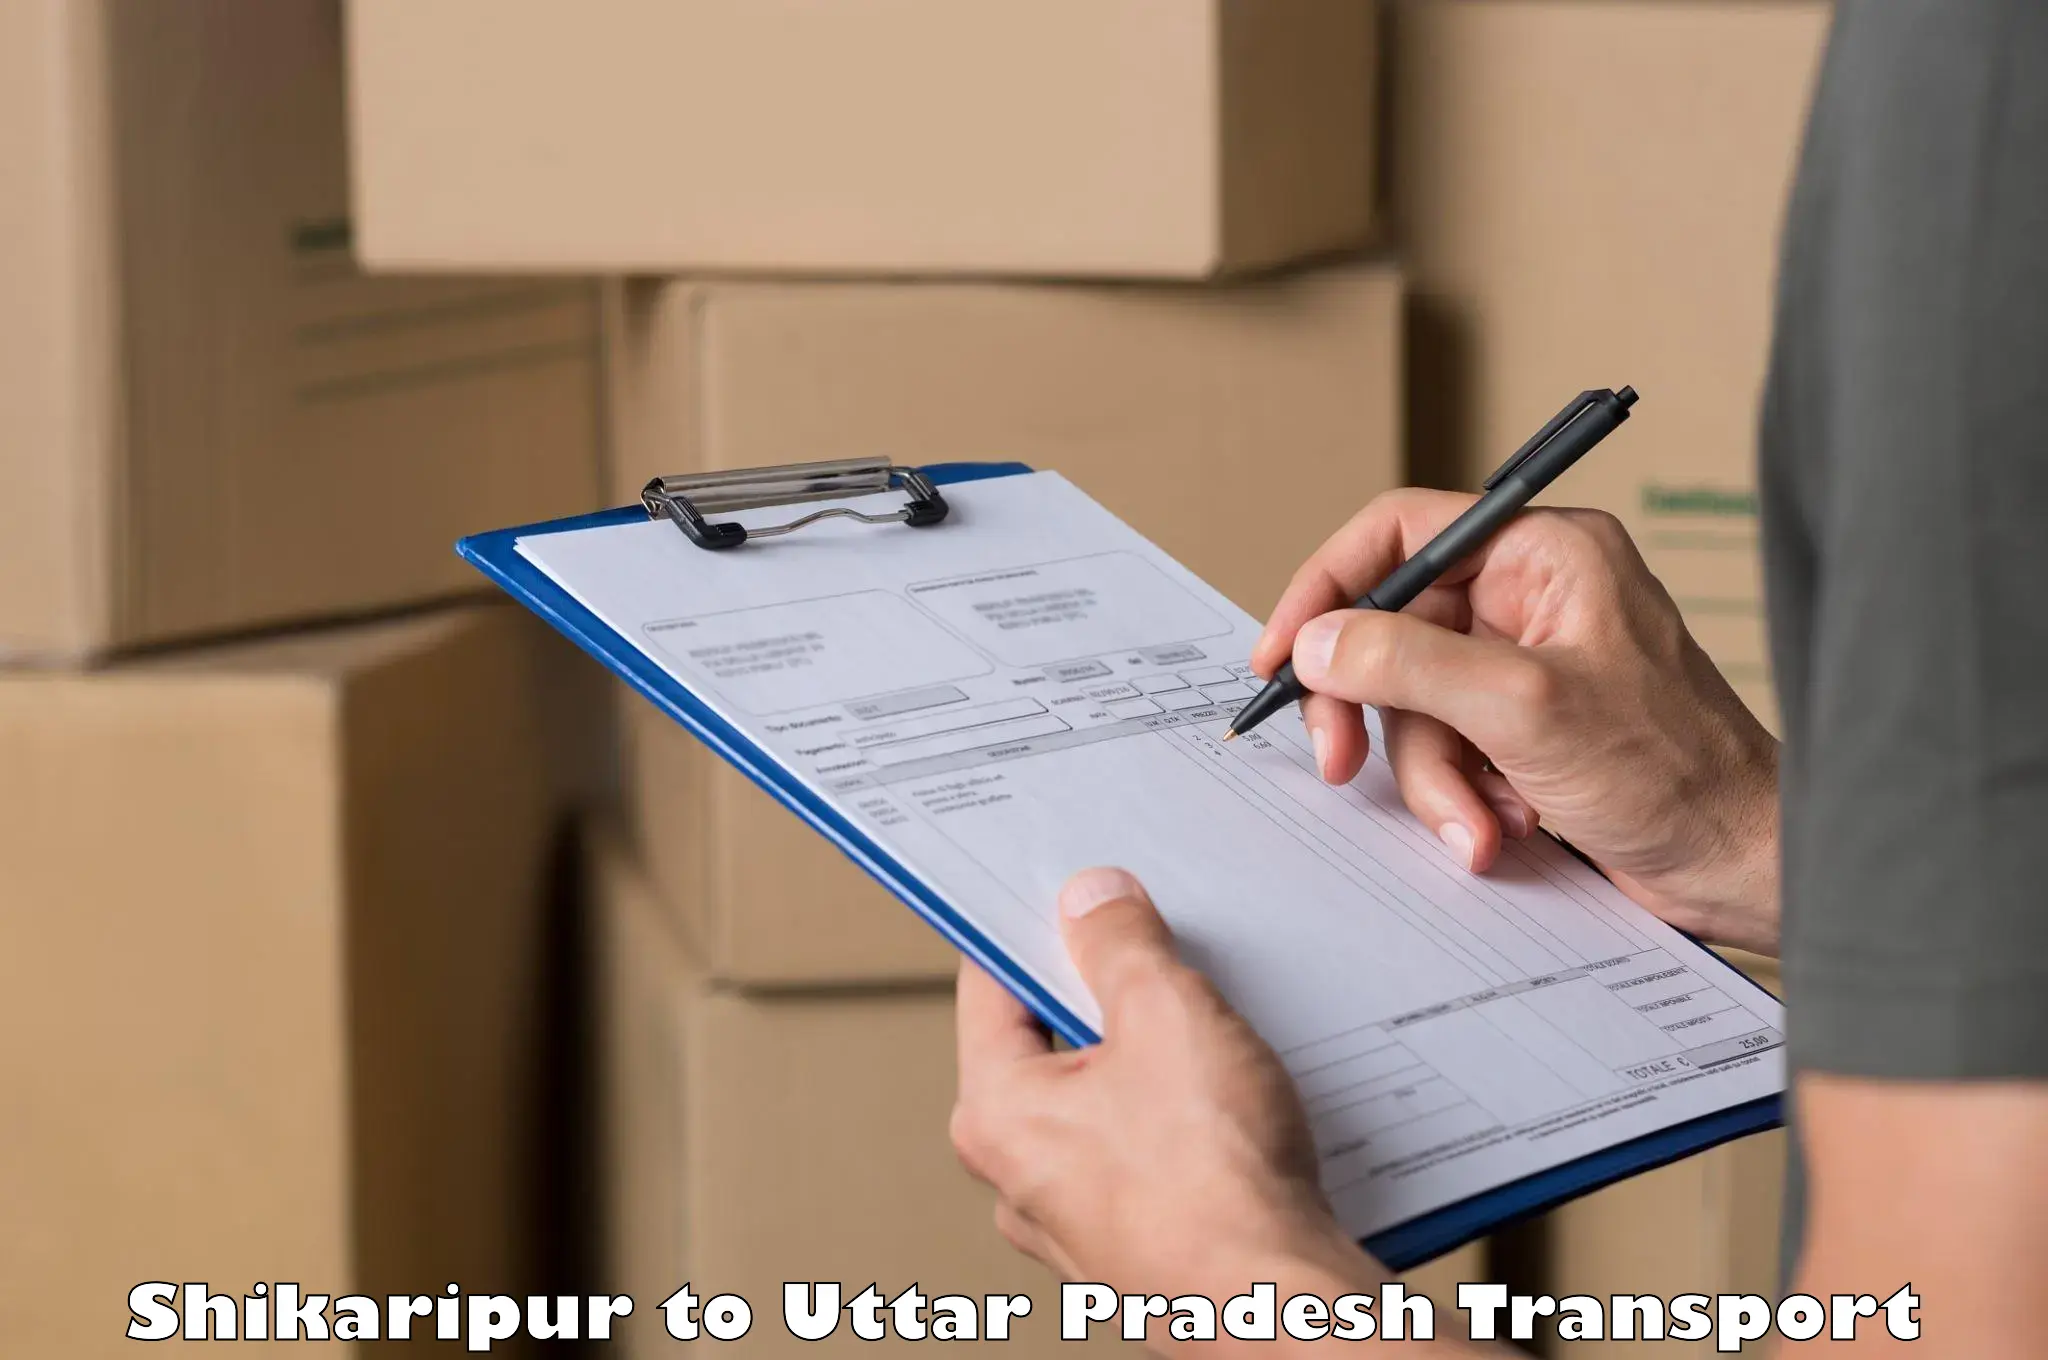 Cargo transport services Shikaripur to Budaun